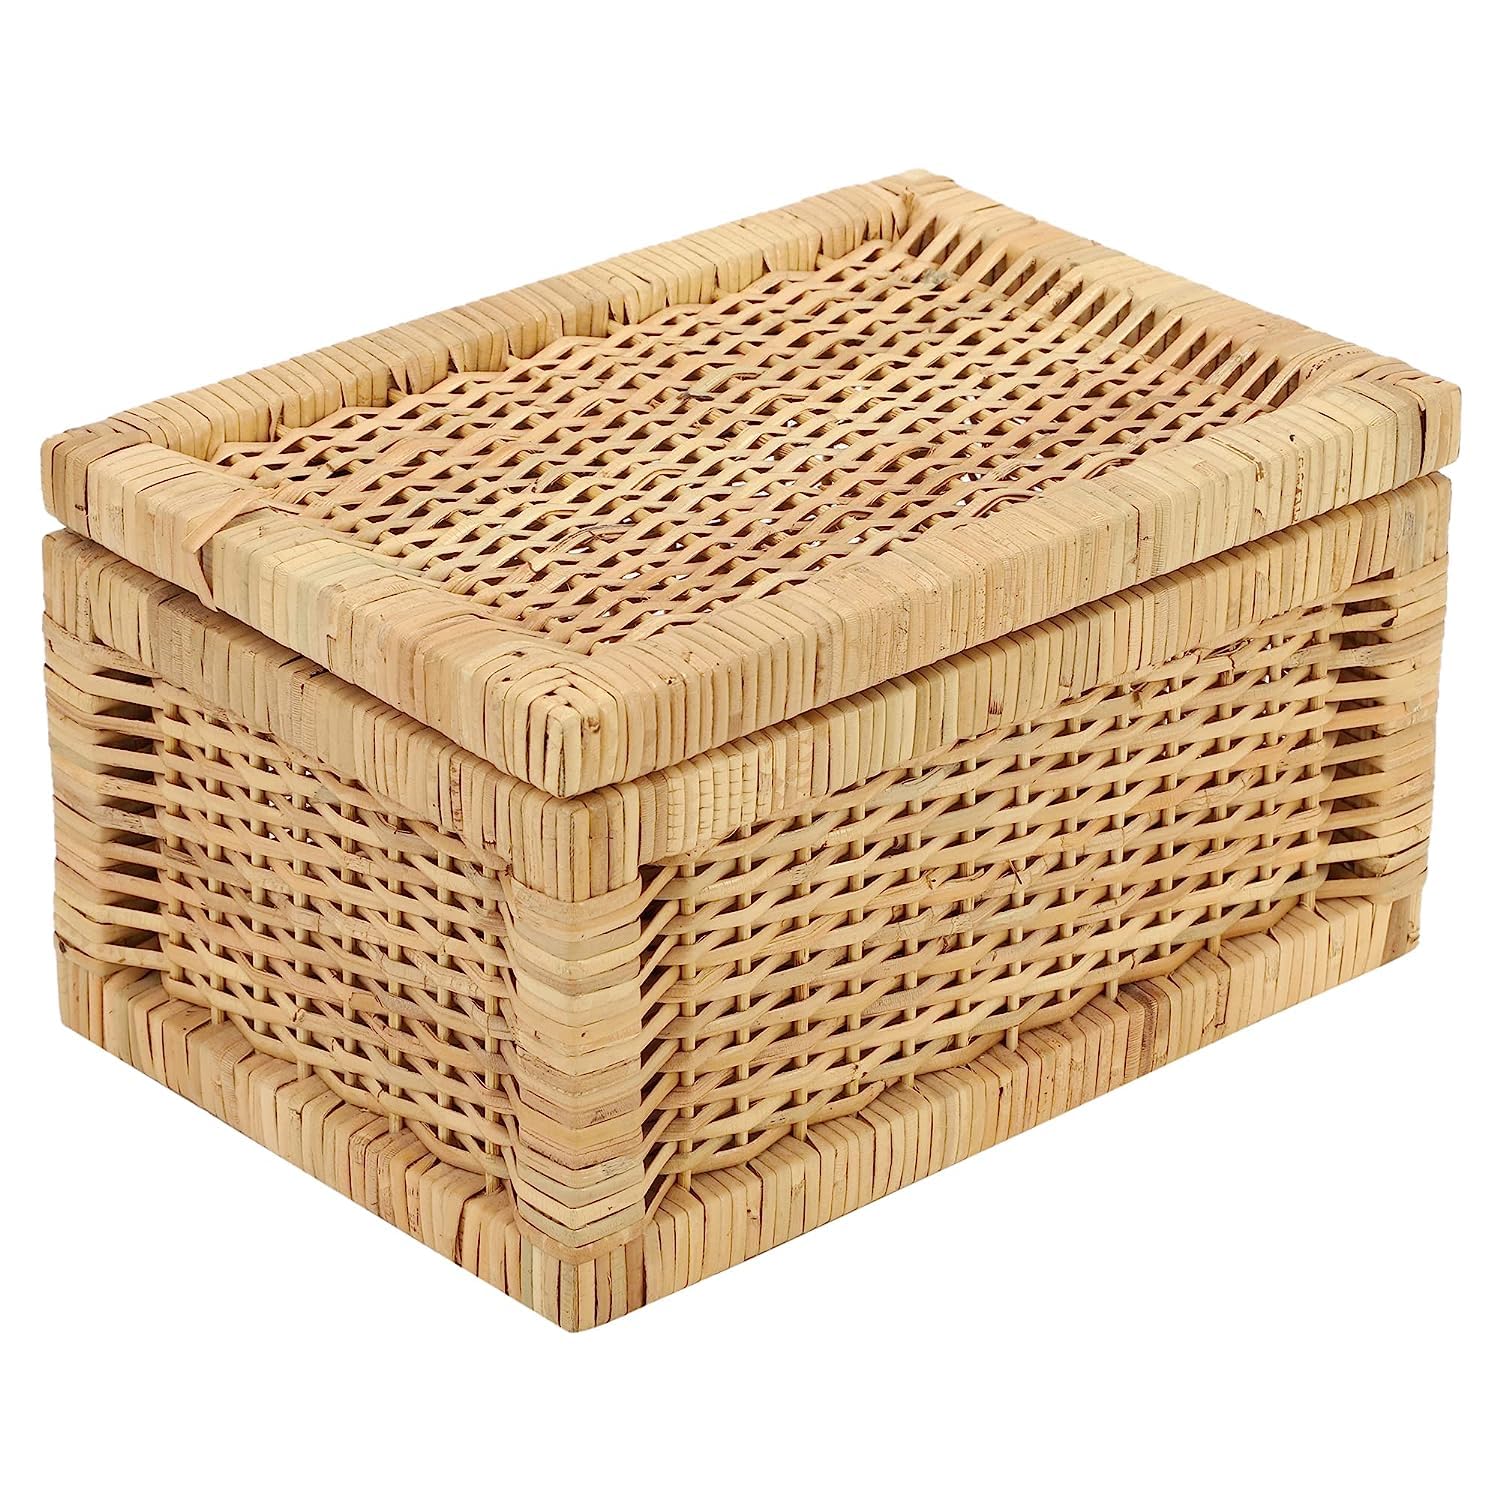 AKWAY Wicker Storage Basket With Lid for Bathroom Utilities (11" L x 9" W x 9" H) - Akway